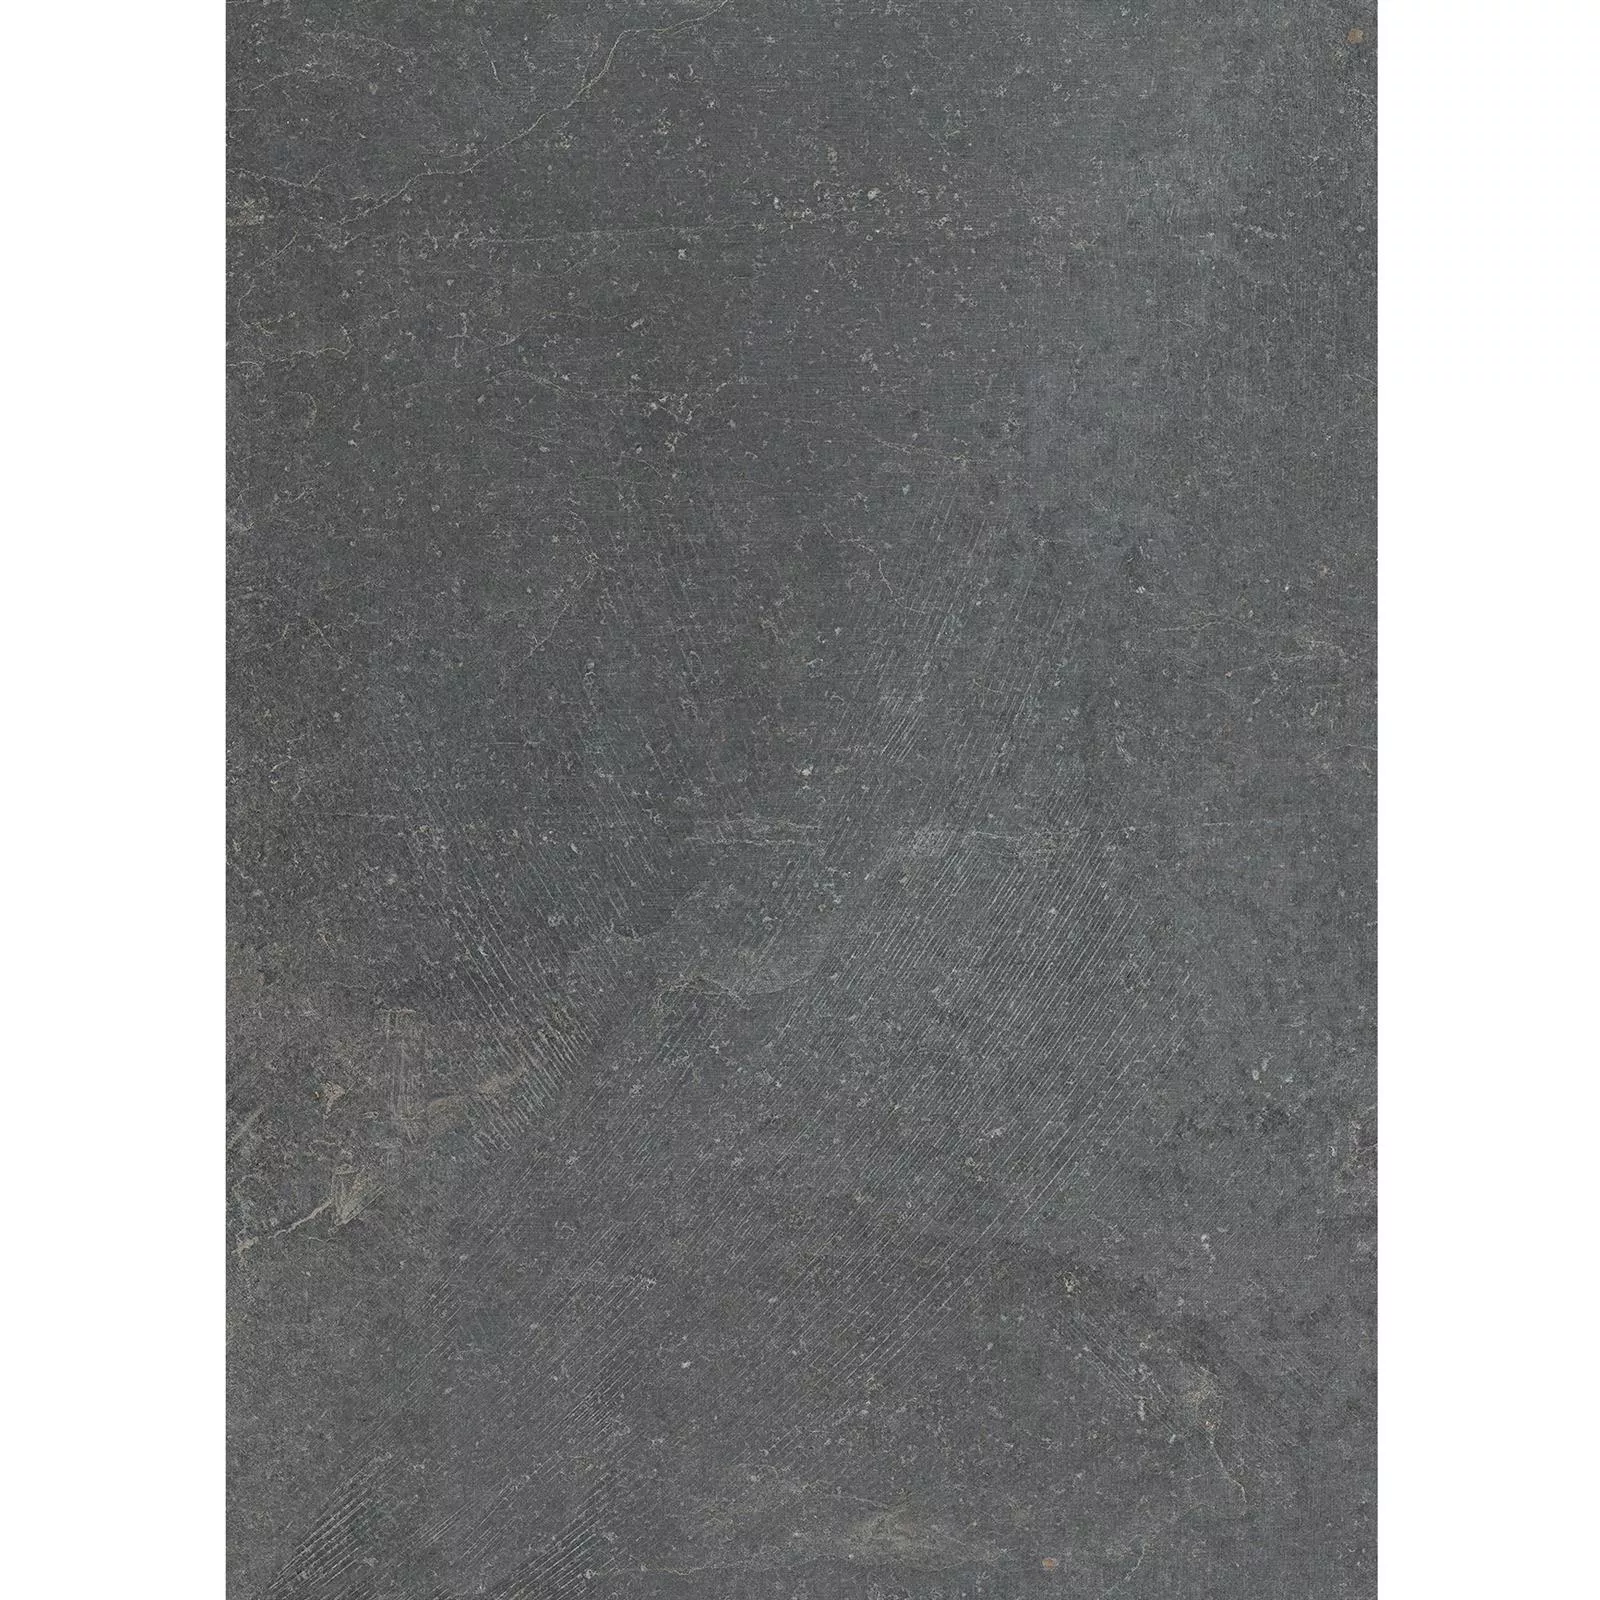 Próbka Płytki Podłogowe Kamień Optyka Horizon Antracyt 60x120cm